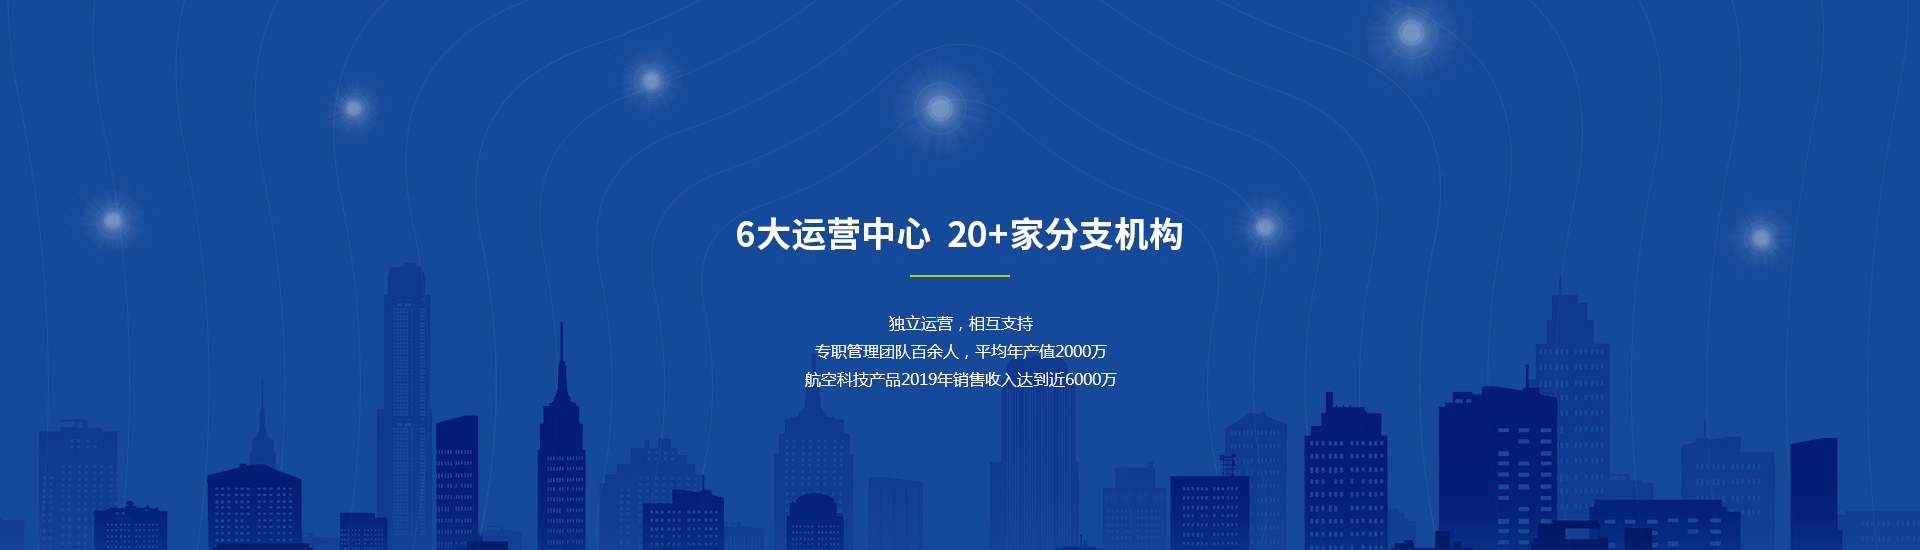 华飞球友会·(中国)官方网站典型教育产品